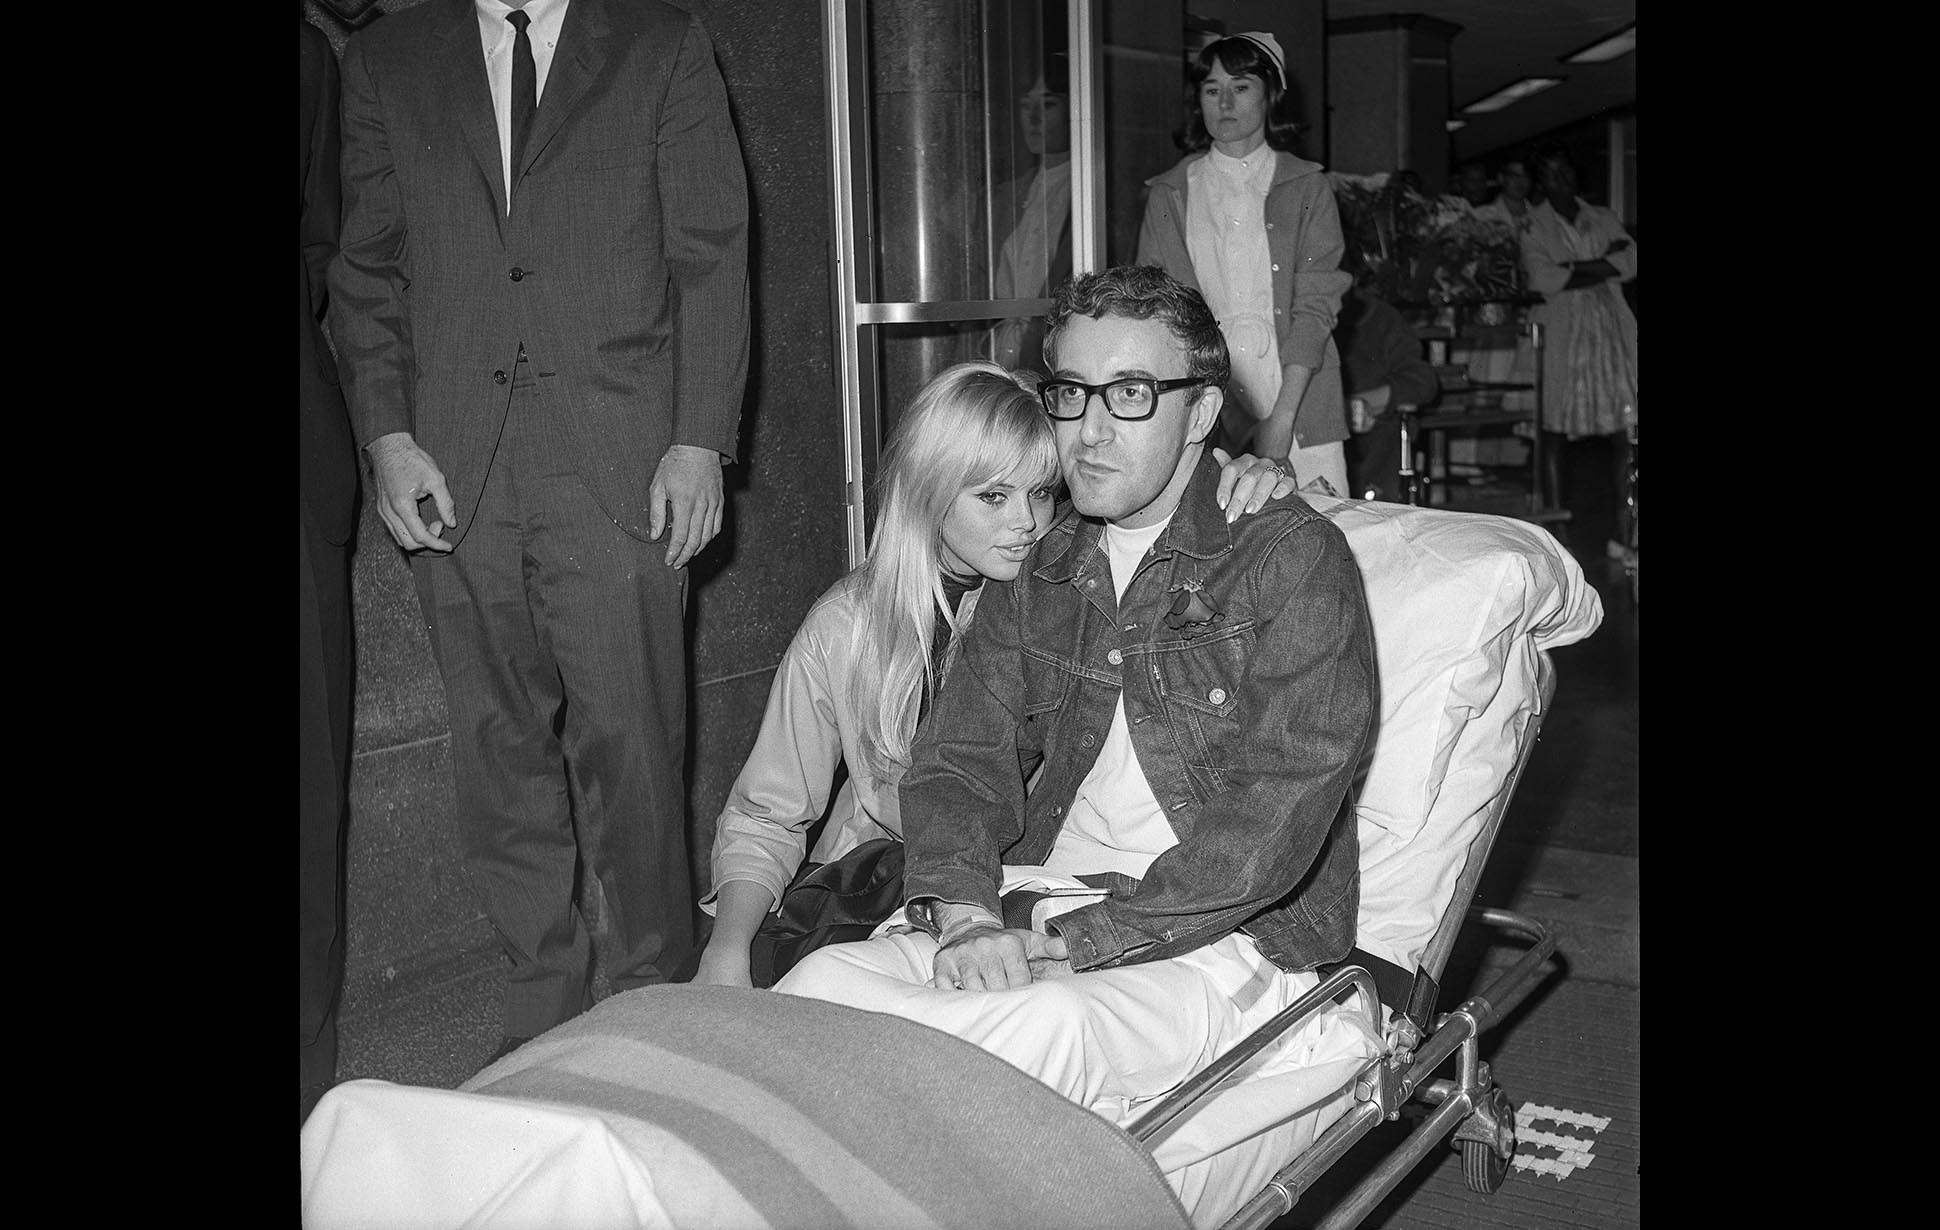 Peter Sellers leaves hospital after 1961 heart attack - Framework ...